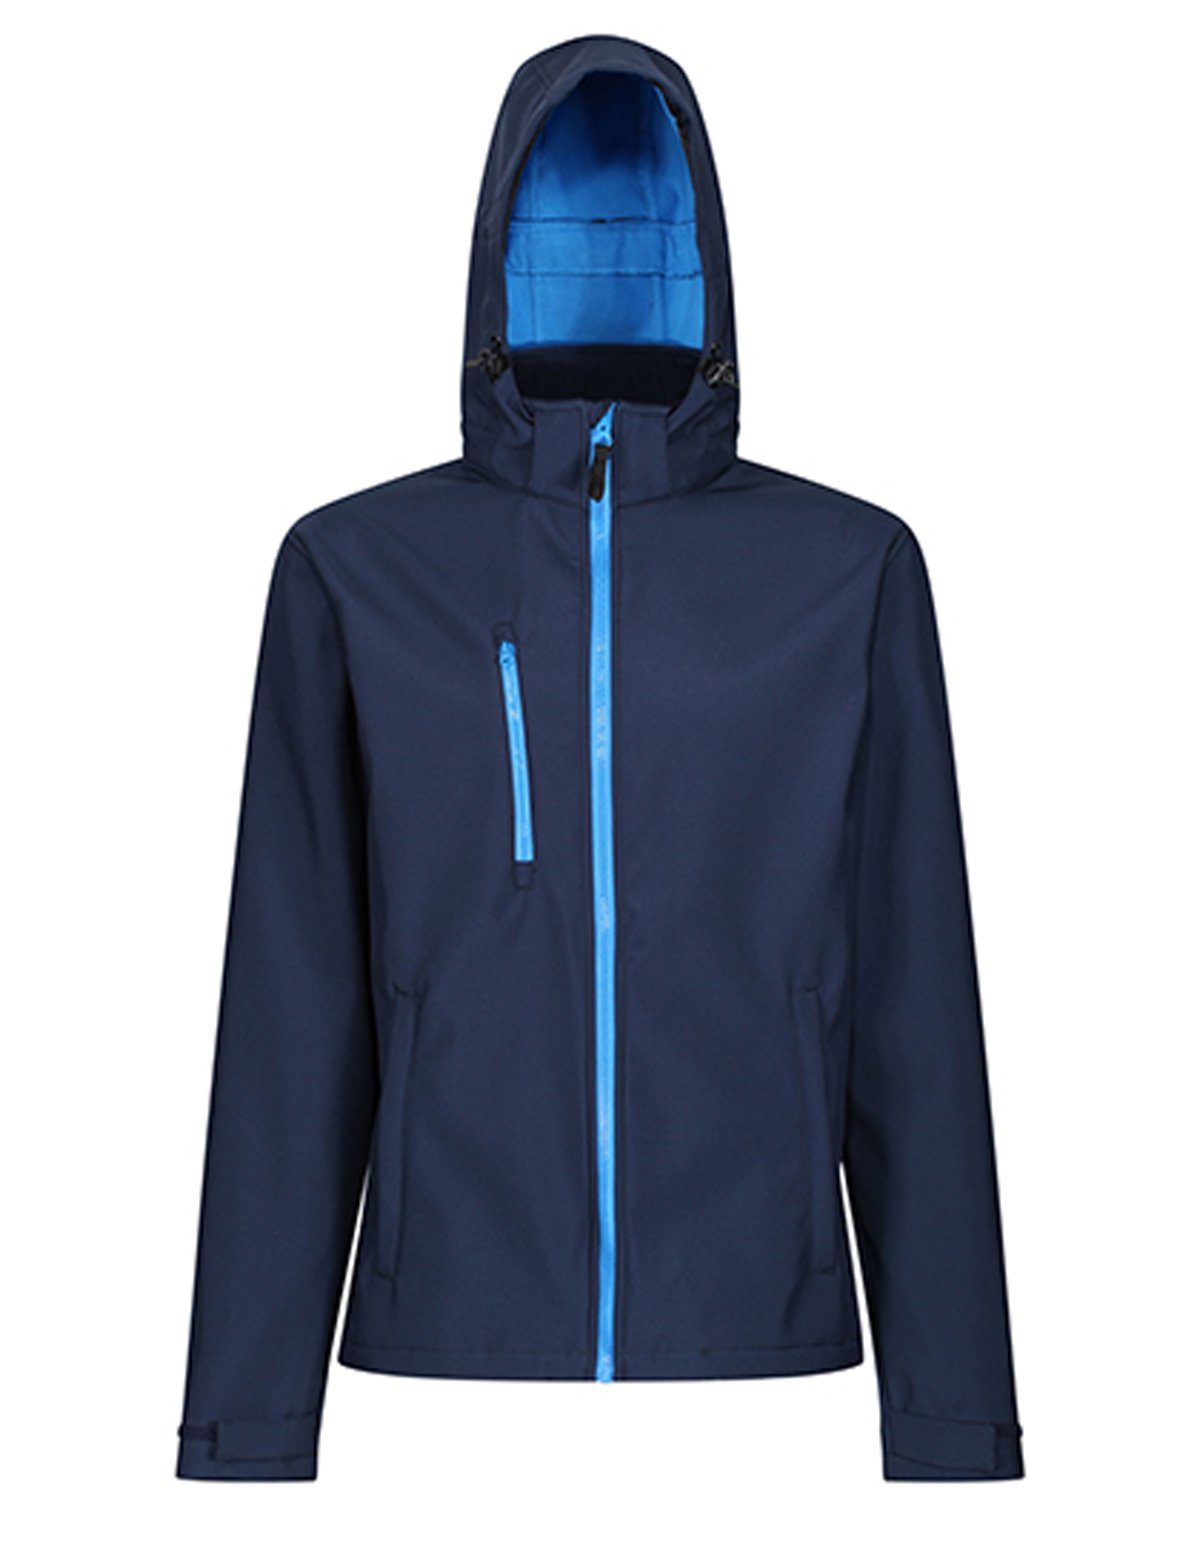 Regatta Professional Softshelljacke Venturer 3-layer Printable Hooded Softshell Jacket RG701 Navy-French Blue